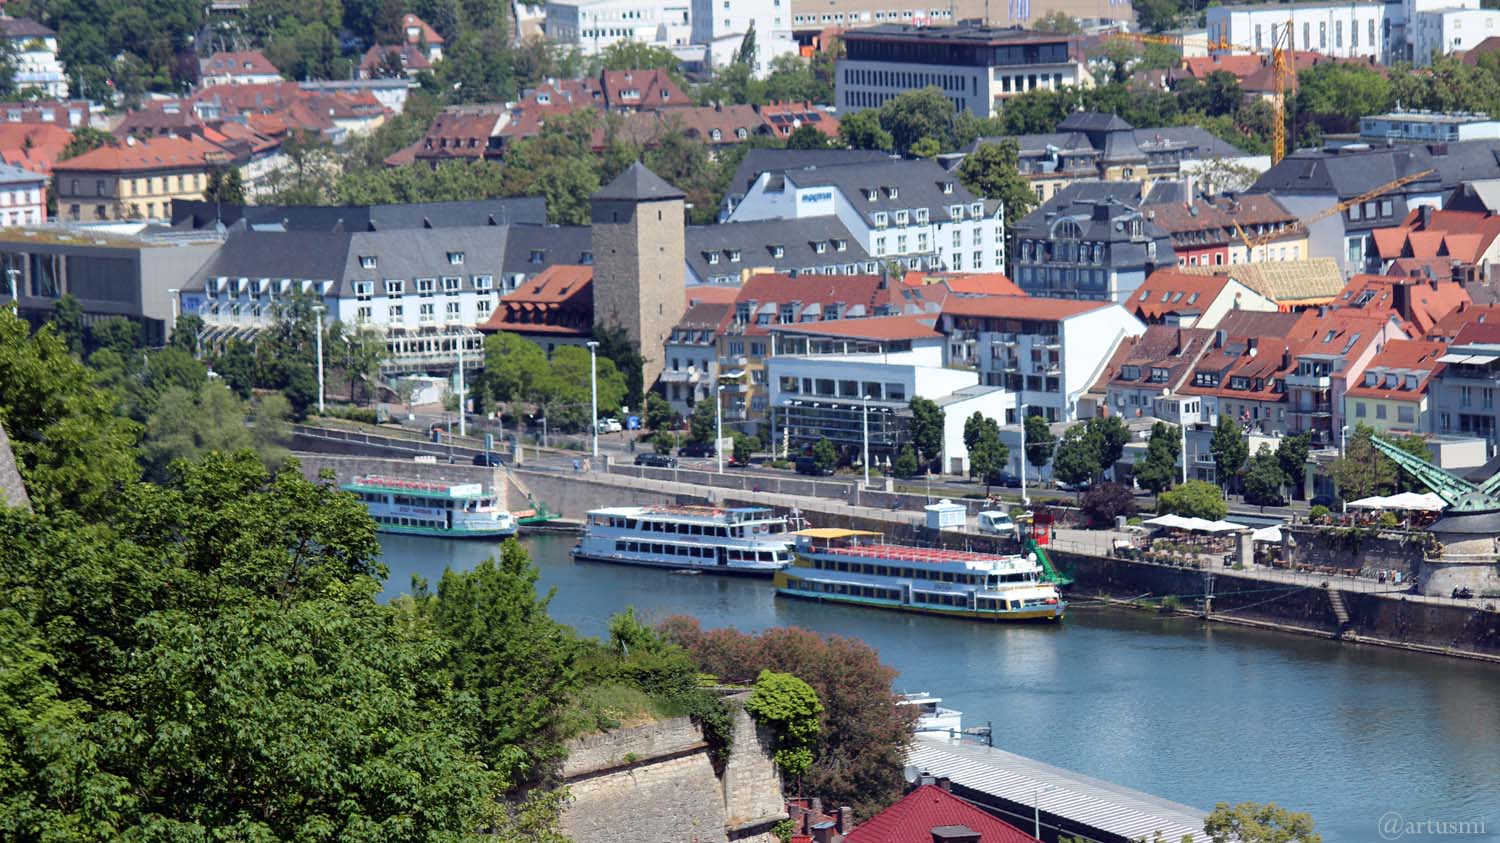 Am 18. Mai 2020 wegen Coronavirus noch keine Schifffahrt auf dem Main in Würzburg